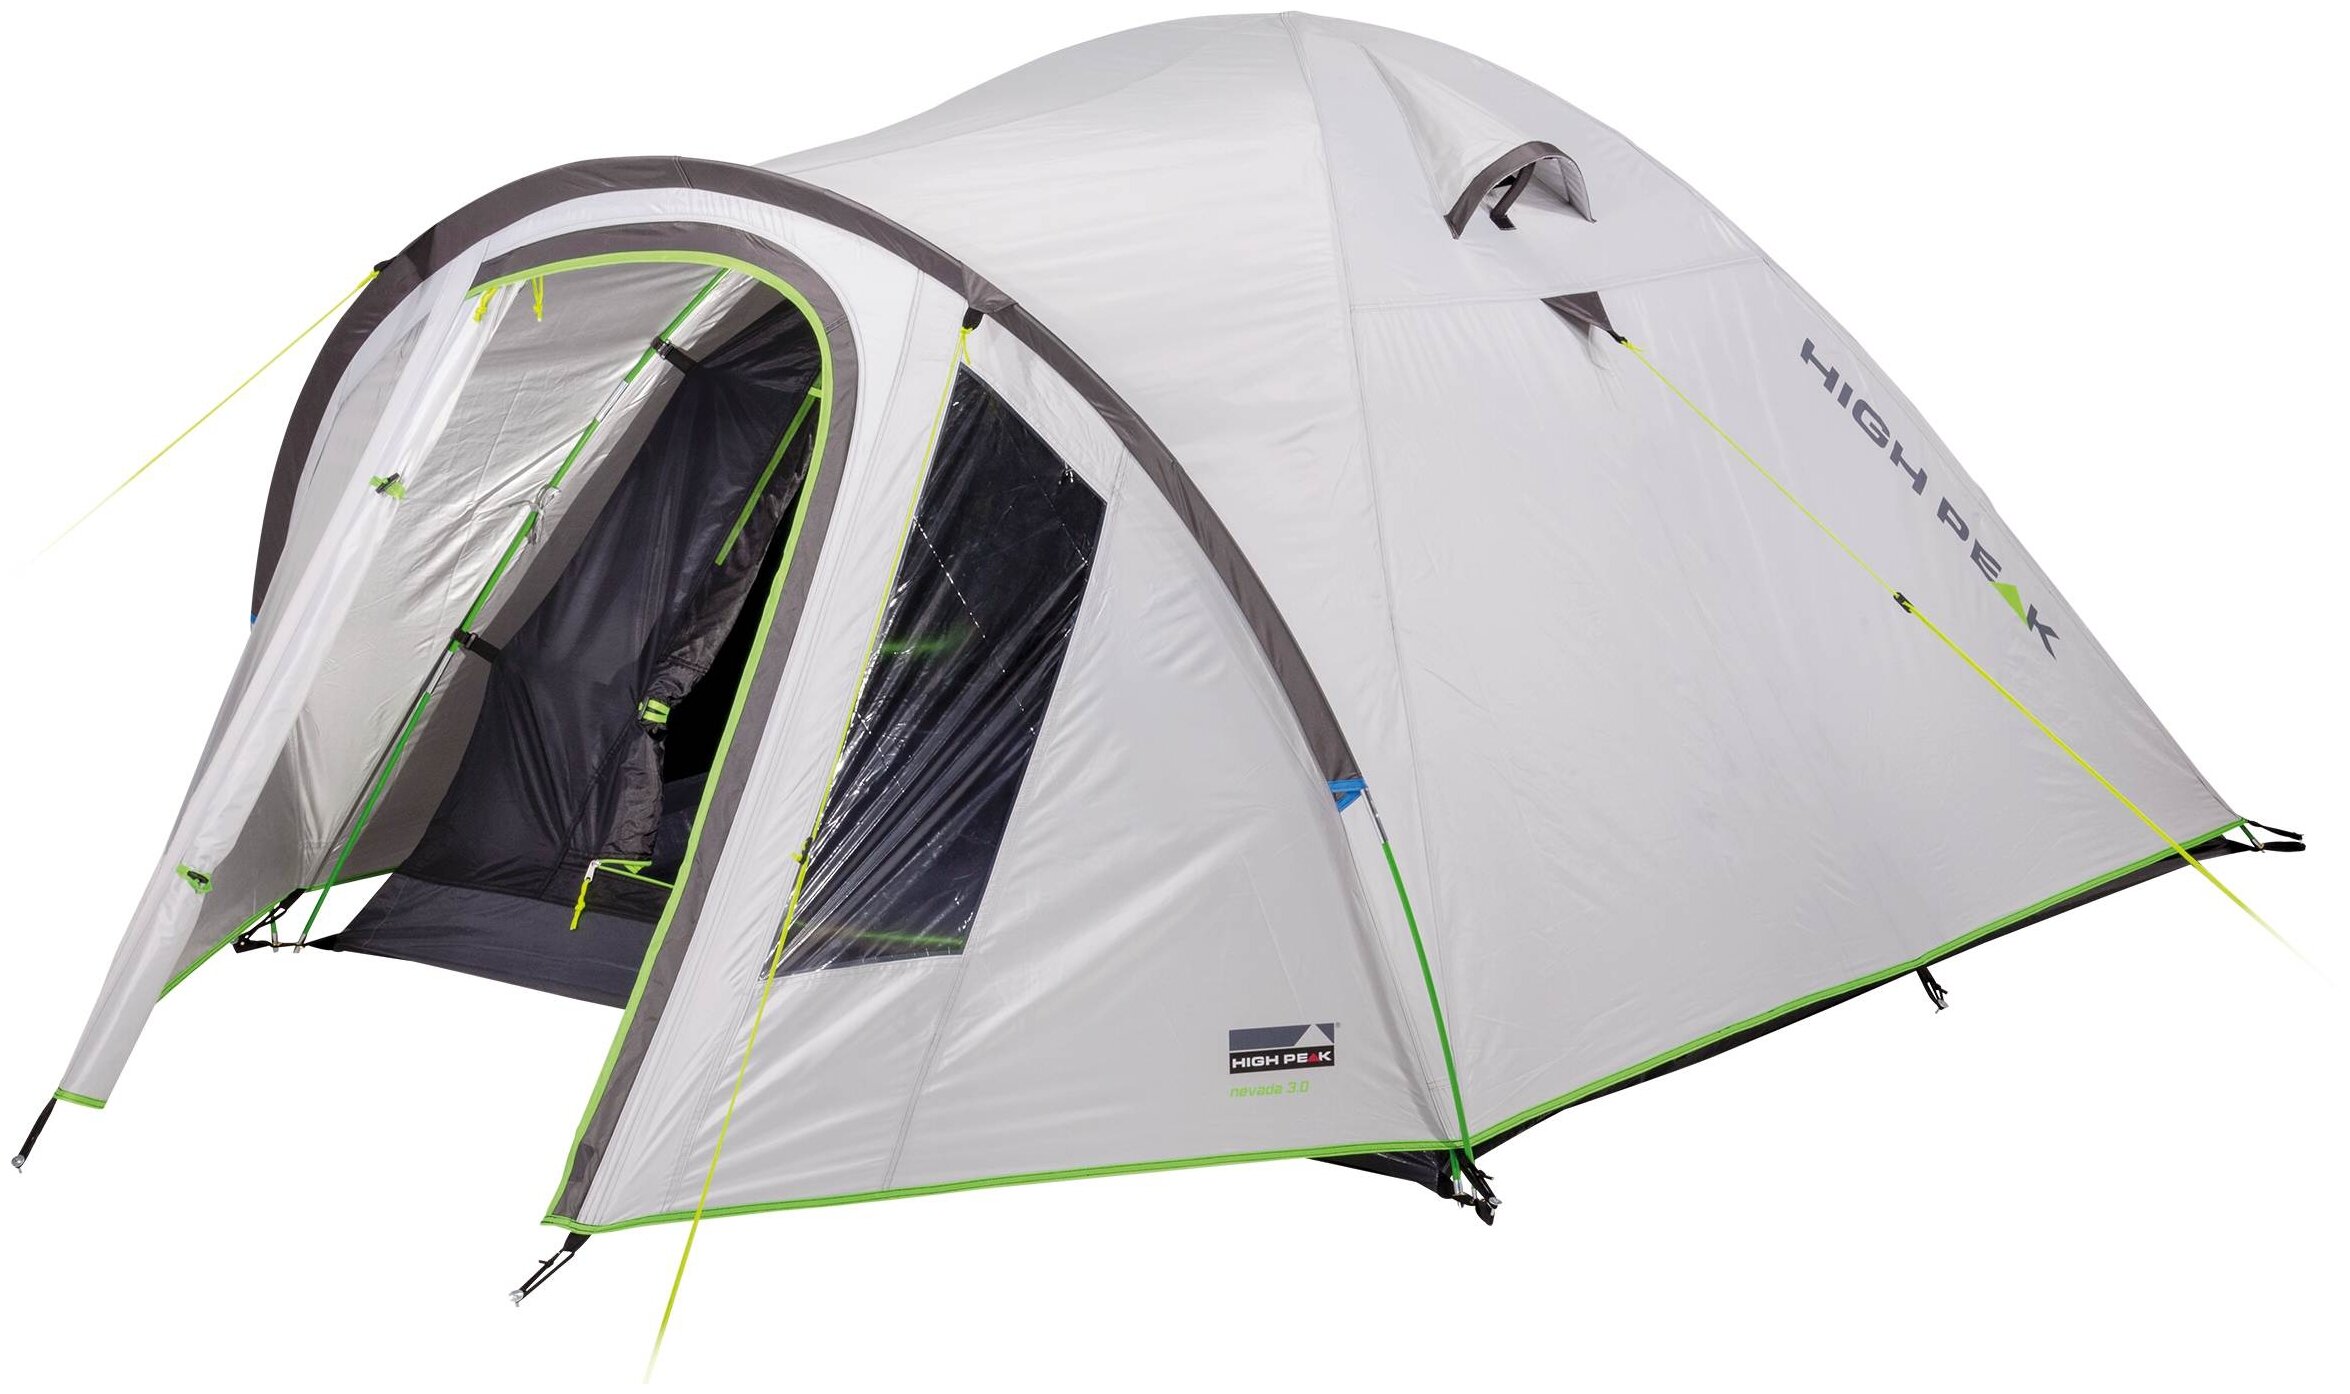 Палатка HIGH PEAK NEVADA 4.0 (4-x местн.) (светло-серый)